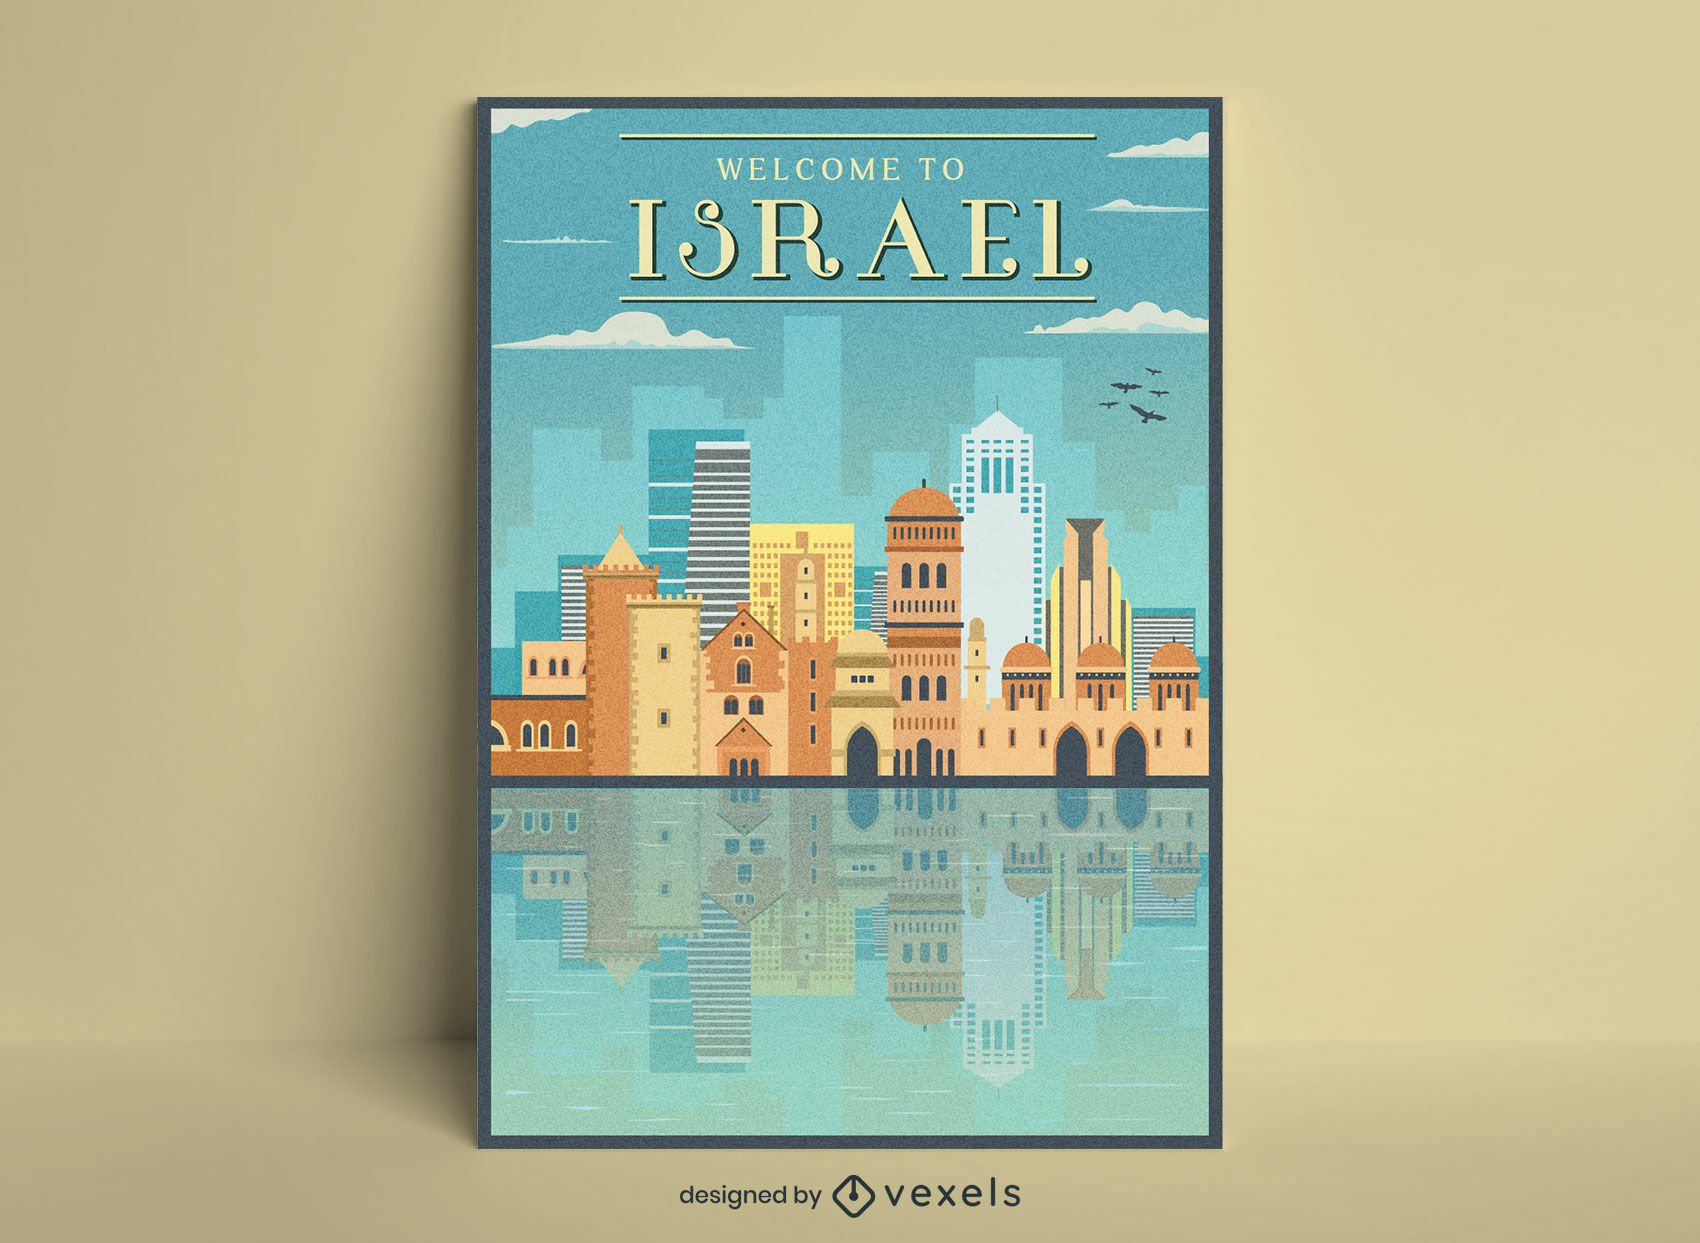 Israel tourism vintage travel poster design